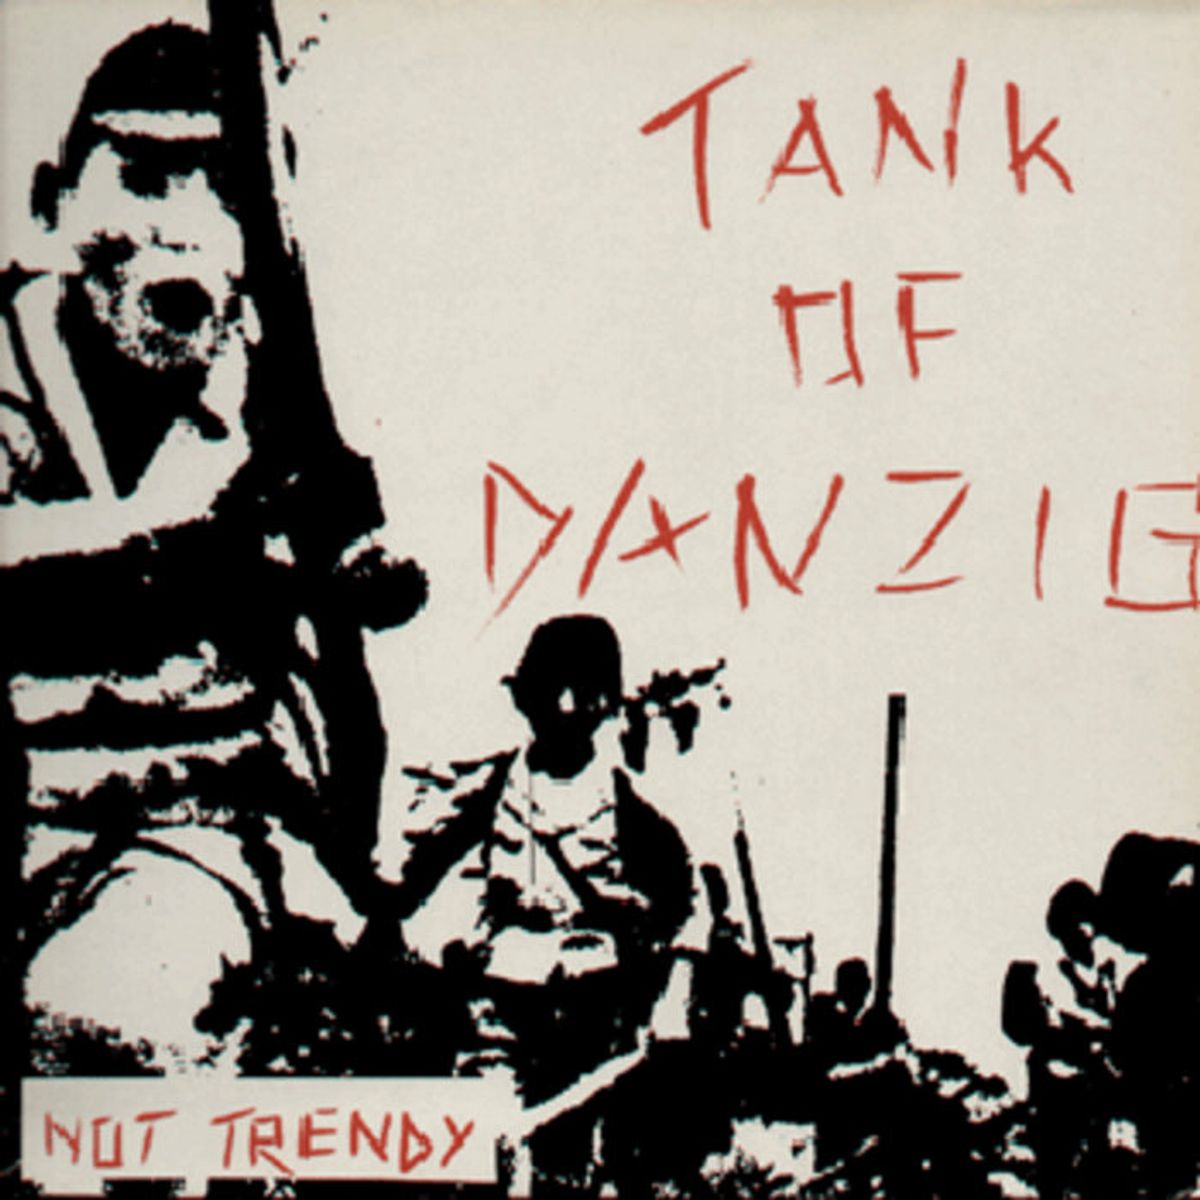 #MutantDisco - Tank Of . Danzig - No New York (1982)